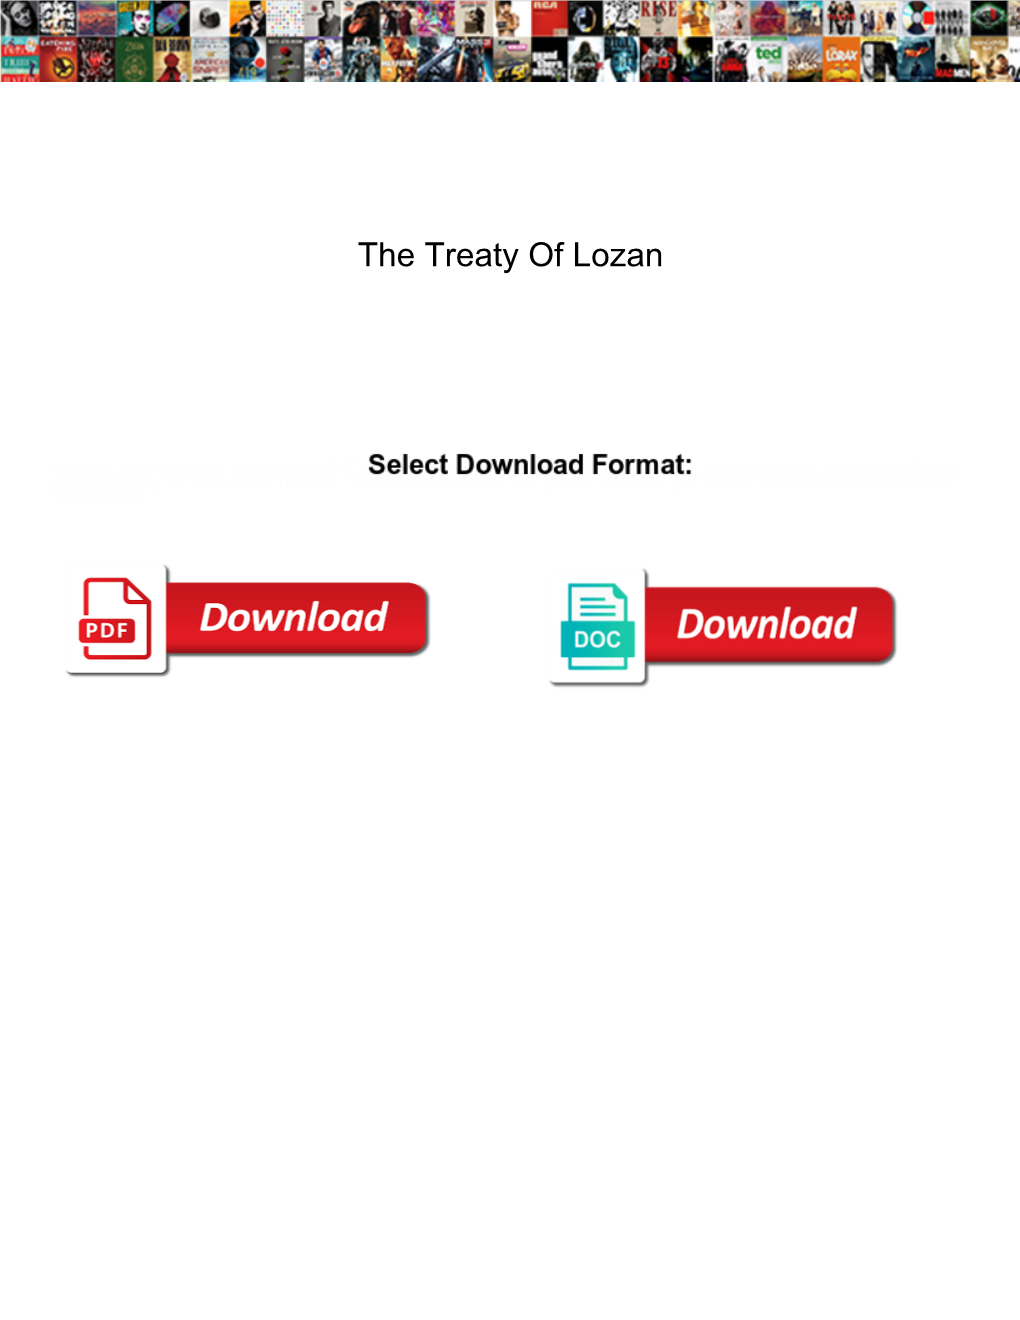 The Treaty of Lozan